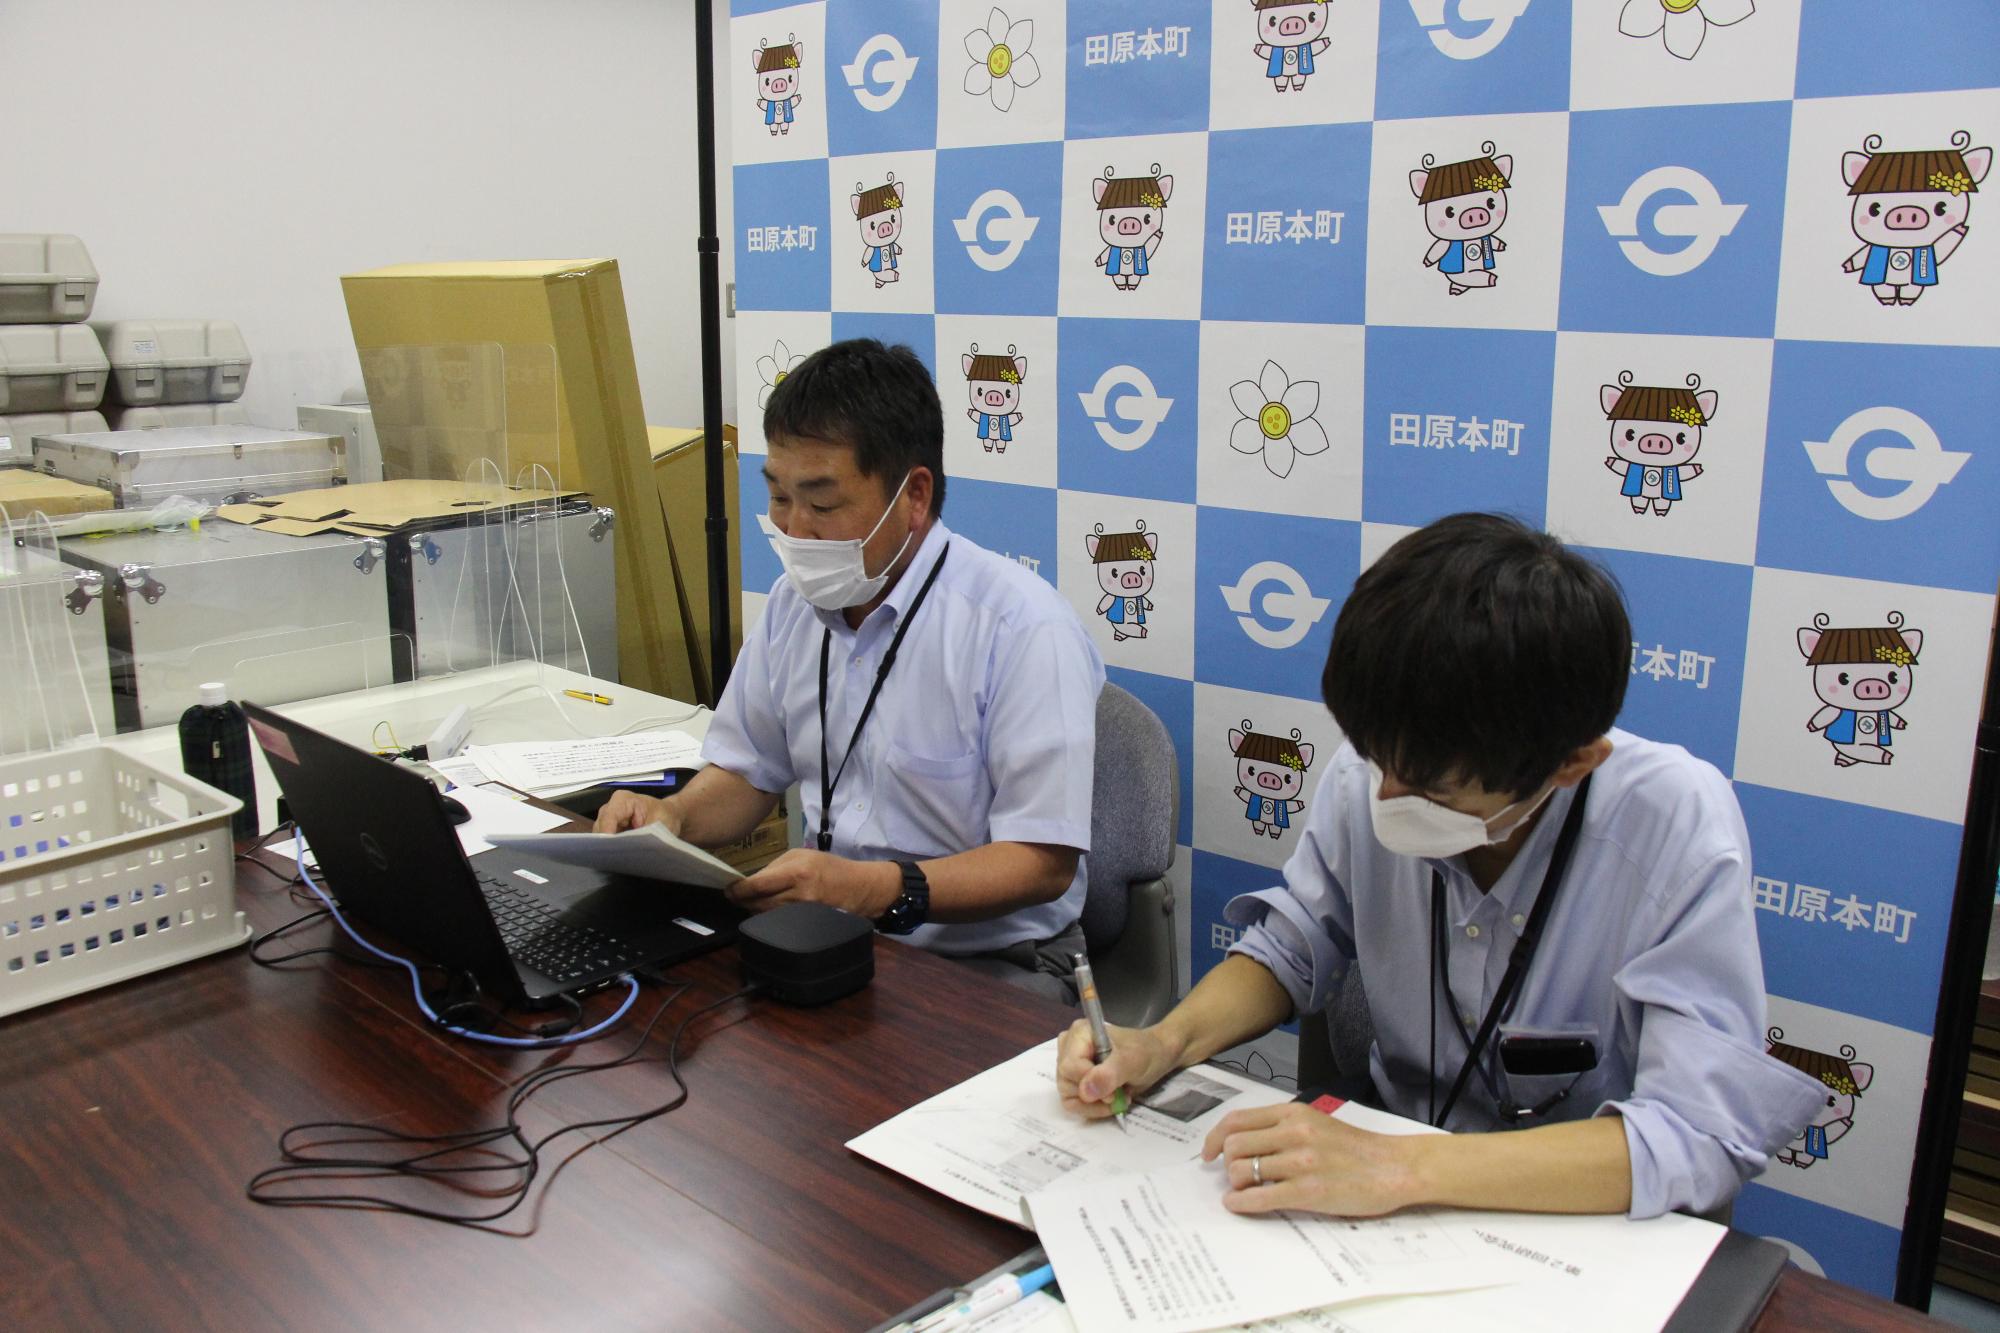 田原本町におけるデジタル化の取り組み・人材育成についての事例発表